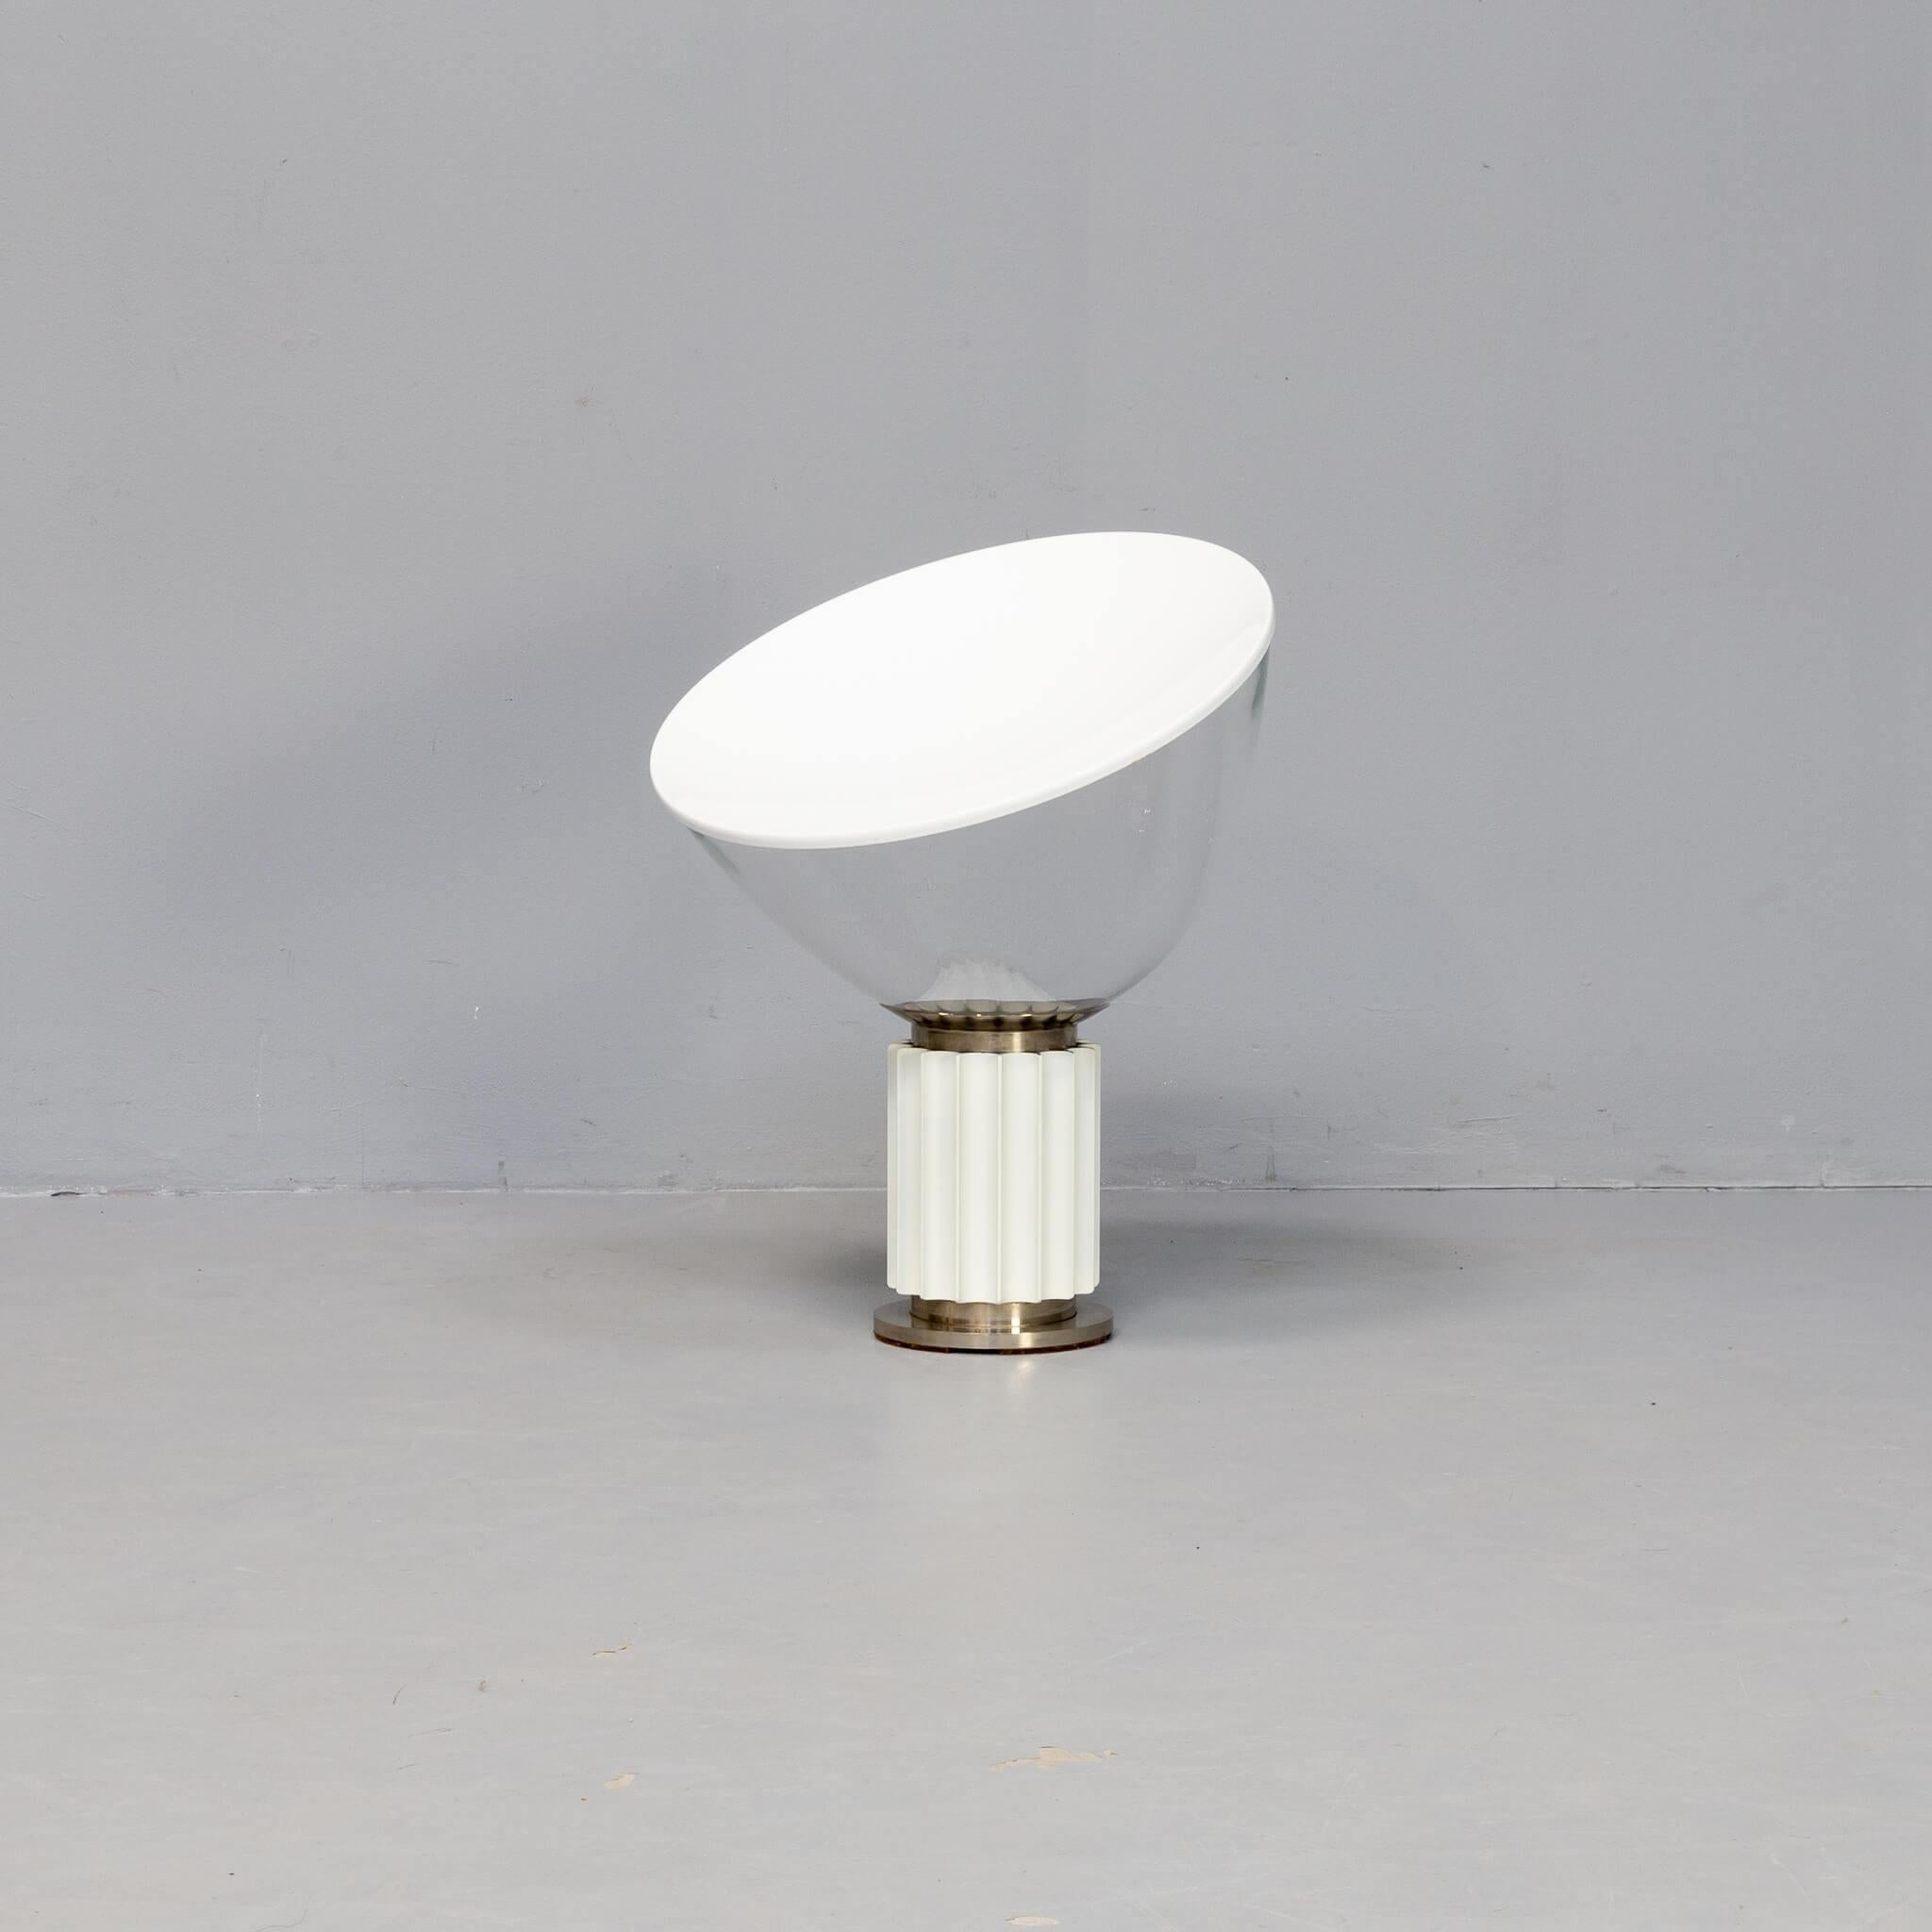 En 1962, les frères Achille et Pier Giacomo Castiglioni ont conçu la lampe de table Taccia pour Flos. Les frères n'ont jamais eu l'intention de concevoir une lampe de table postmoderne. En fait, le principal problème de la lampe était le bol. Les